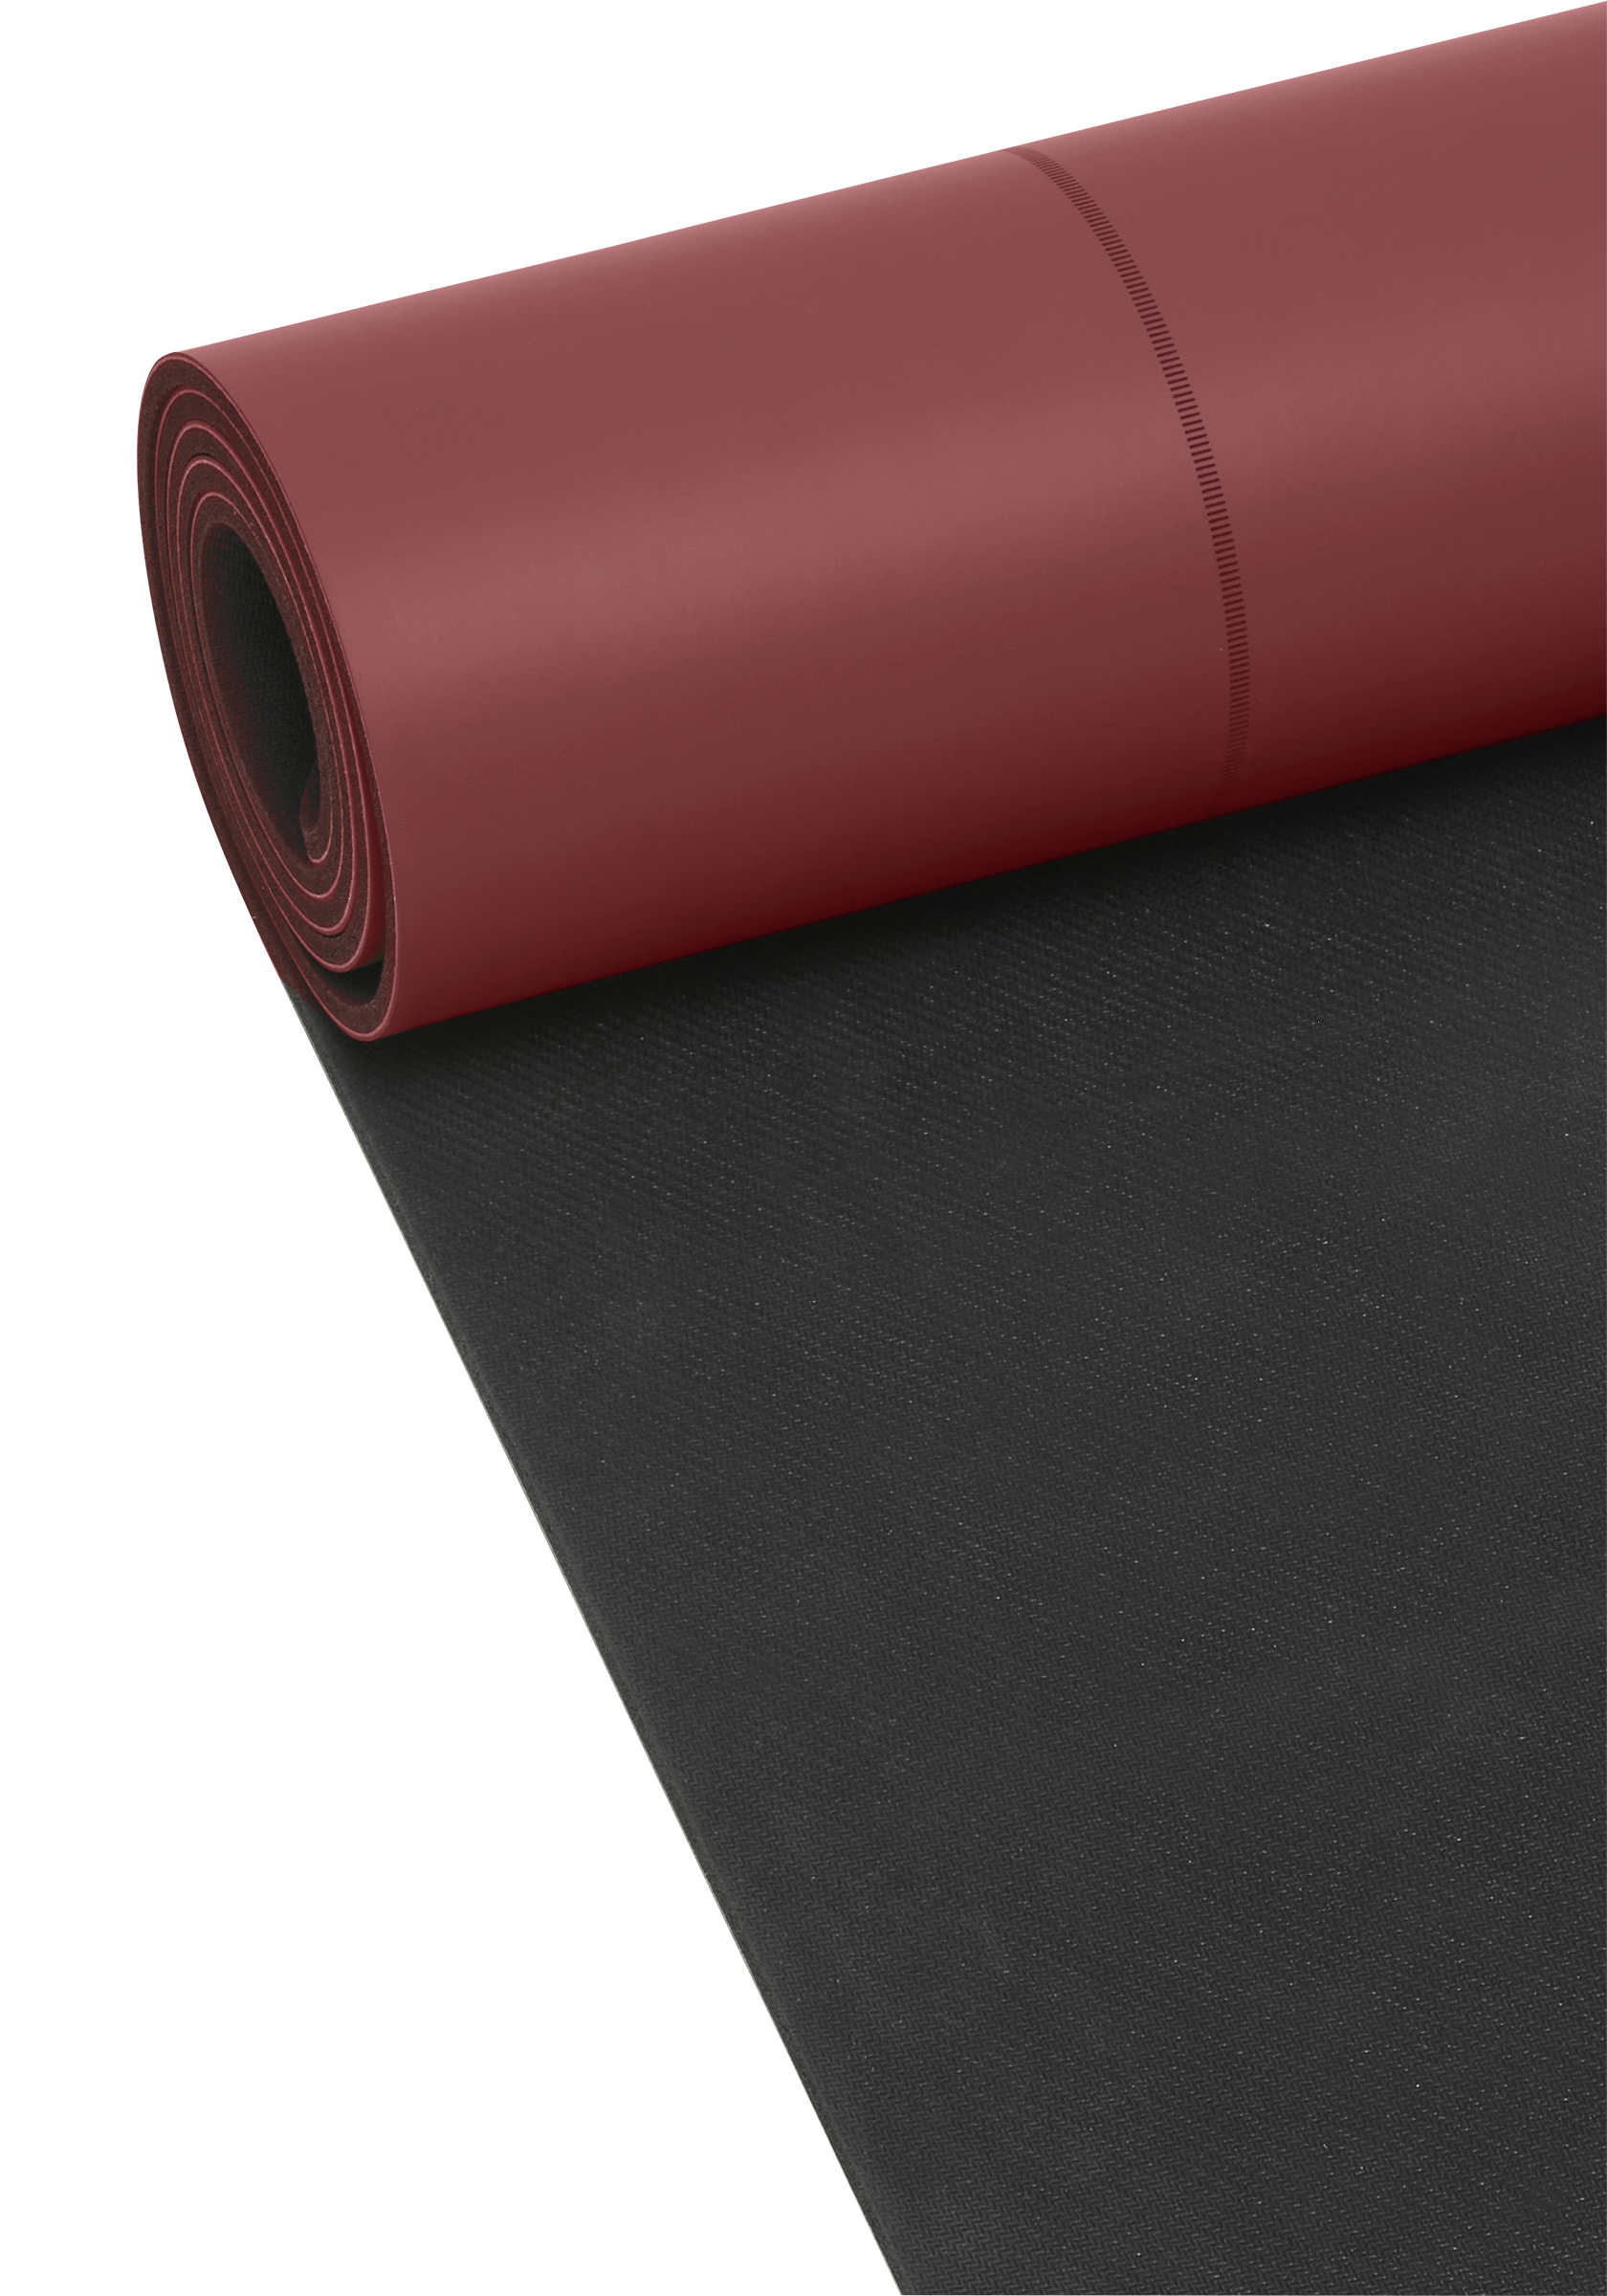 Yoga Mat Grip&Cushion III 5mm Light Sand, Casall 46632